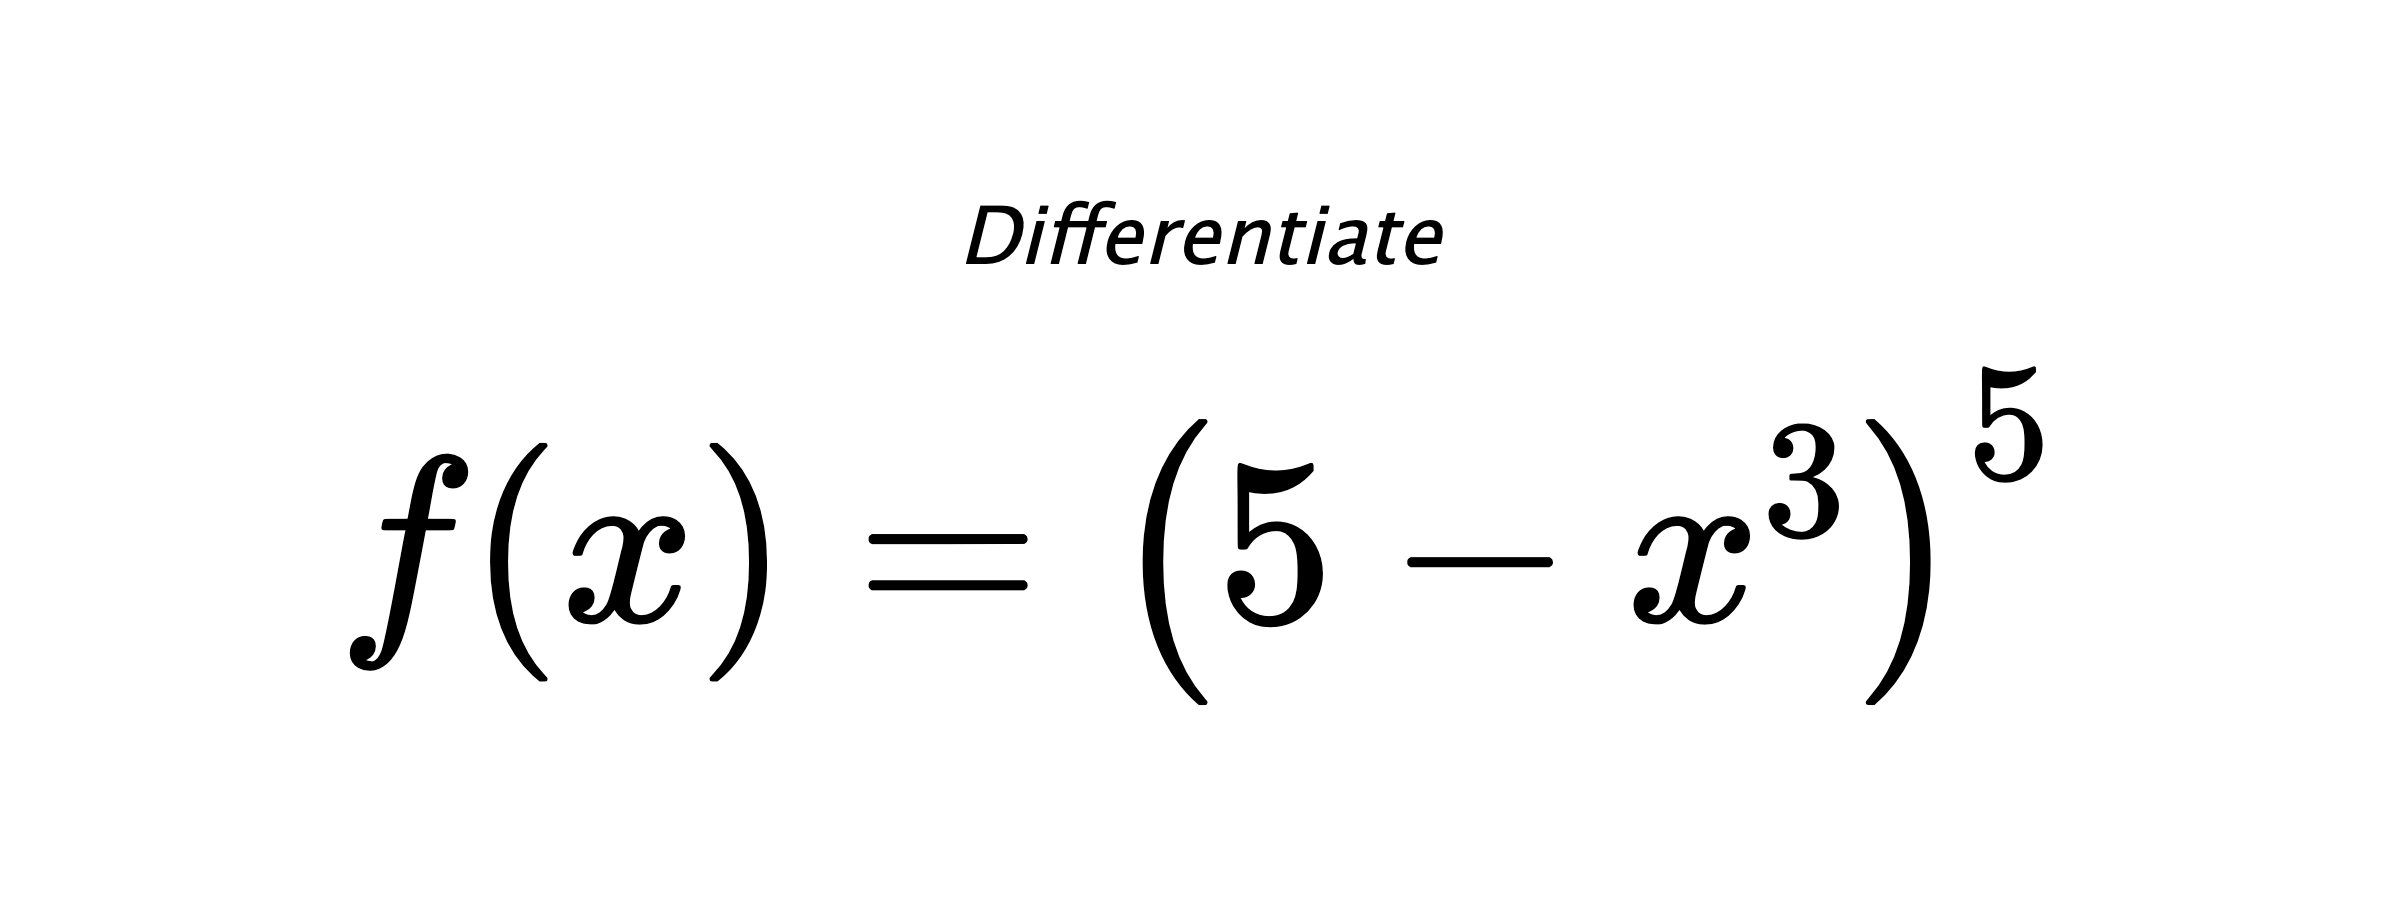 Differentiate $ f(x) = \left(5 - x^{3}\right)^{5} $